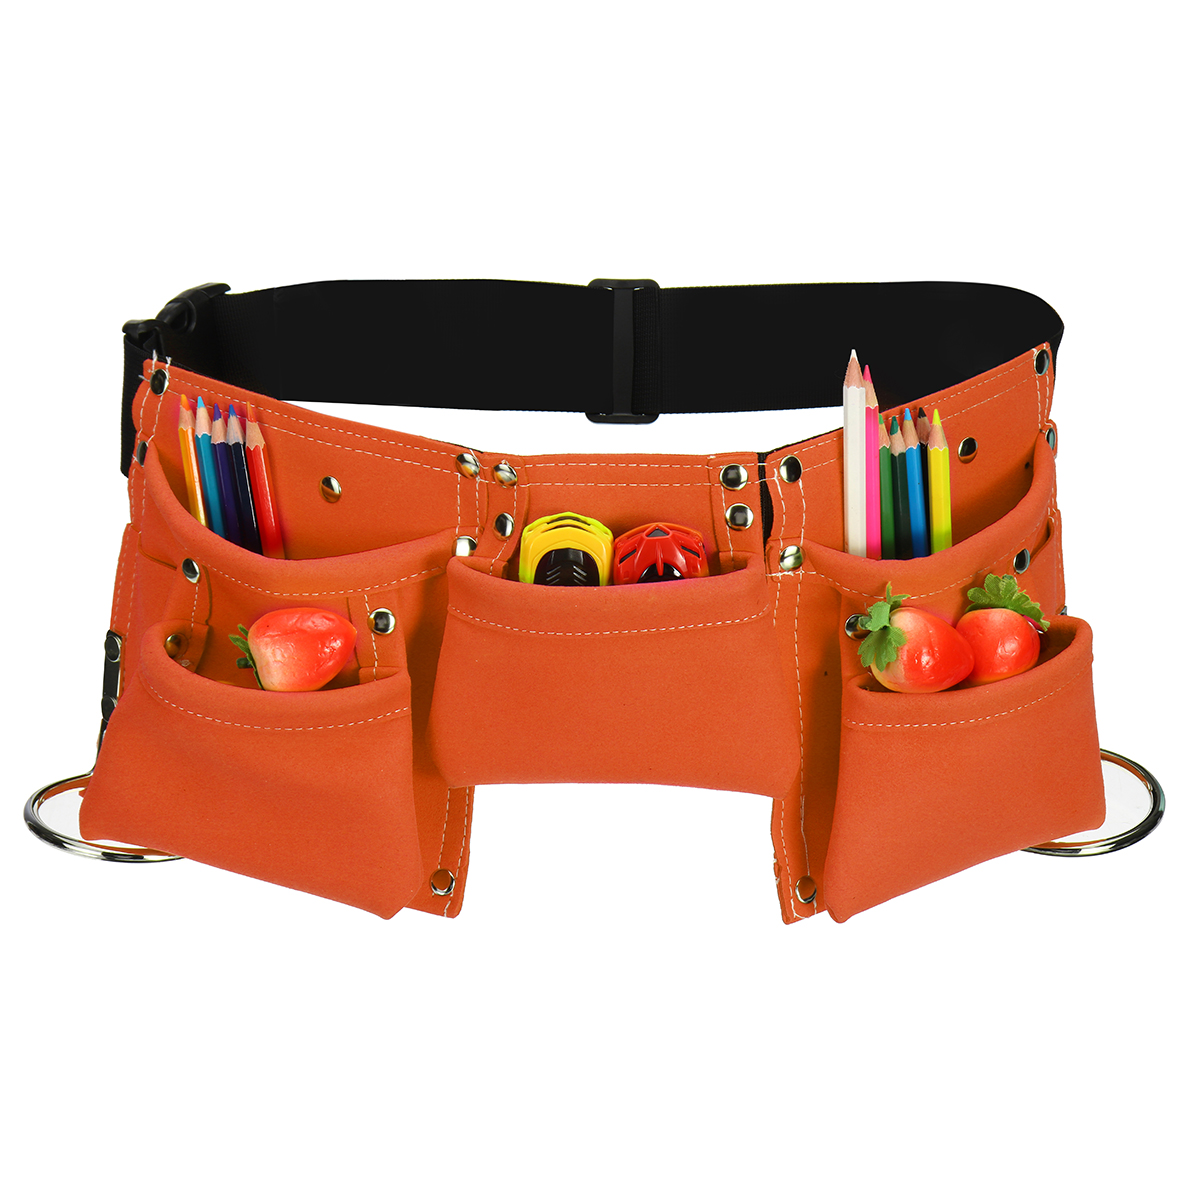 Kids-Tool-Belt-Children-Tool-Pouch-Bag-Waist-Multi-Bag-For-Role-Play-Garden-Adventure-1629647-4